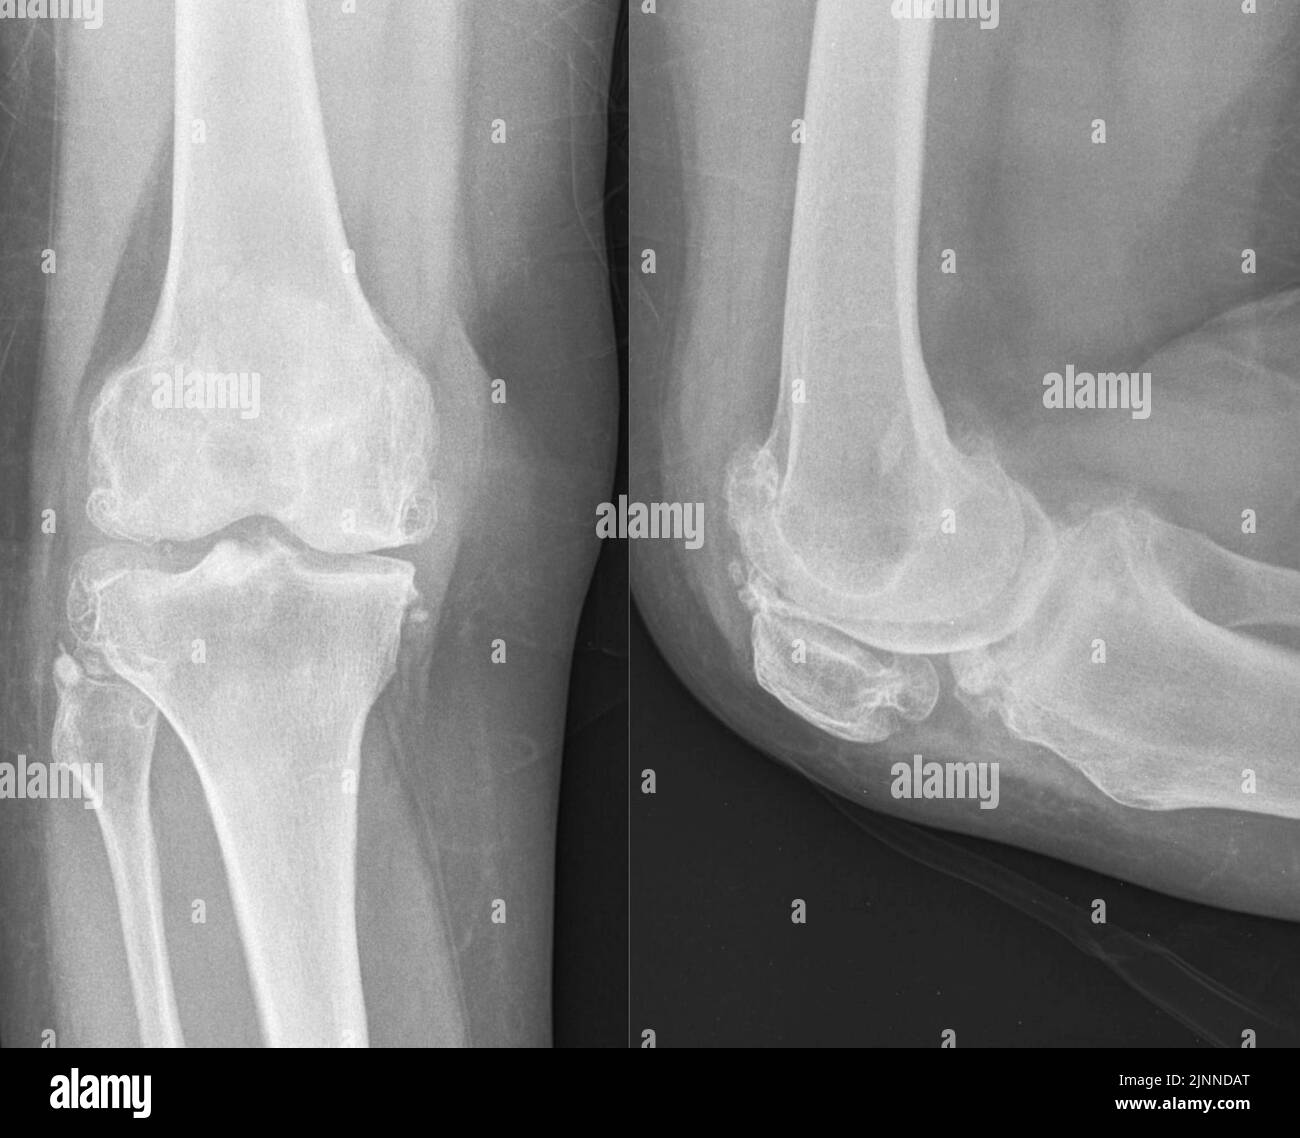 Knee osteoarthritis, X-ray Stock Photo